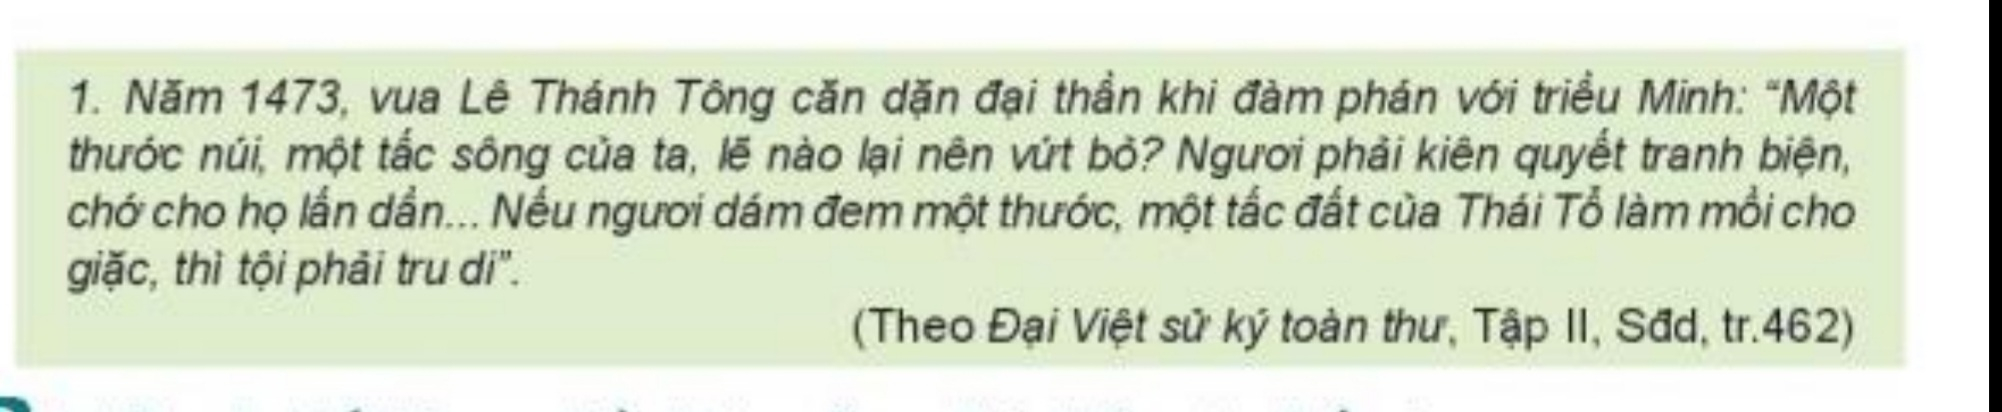 Bài 17: Đại Việt thời Lê sơ (1428 - 1527)